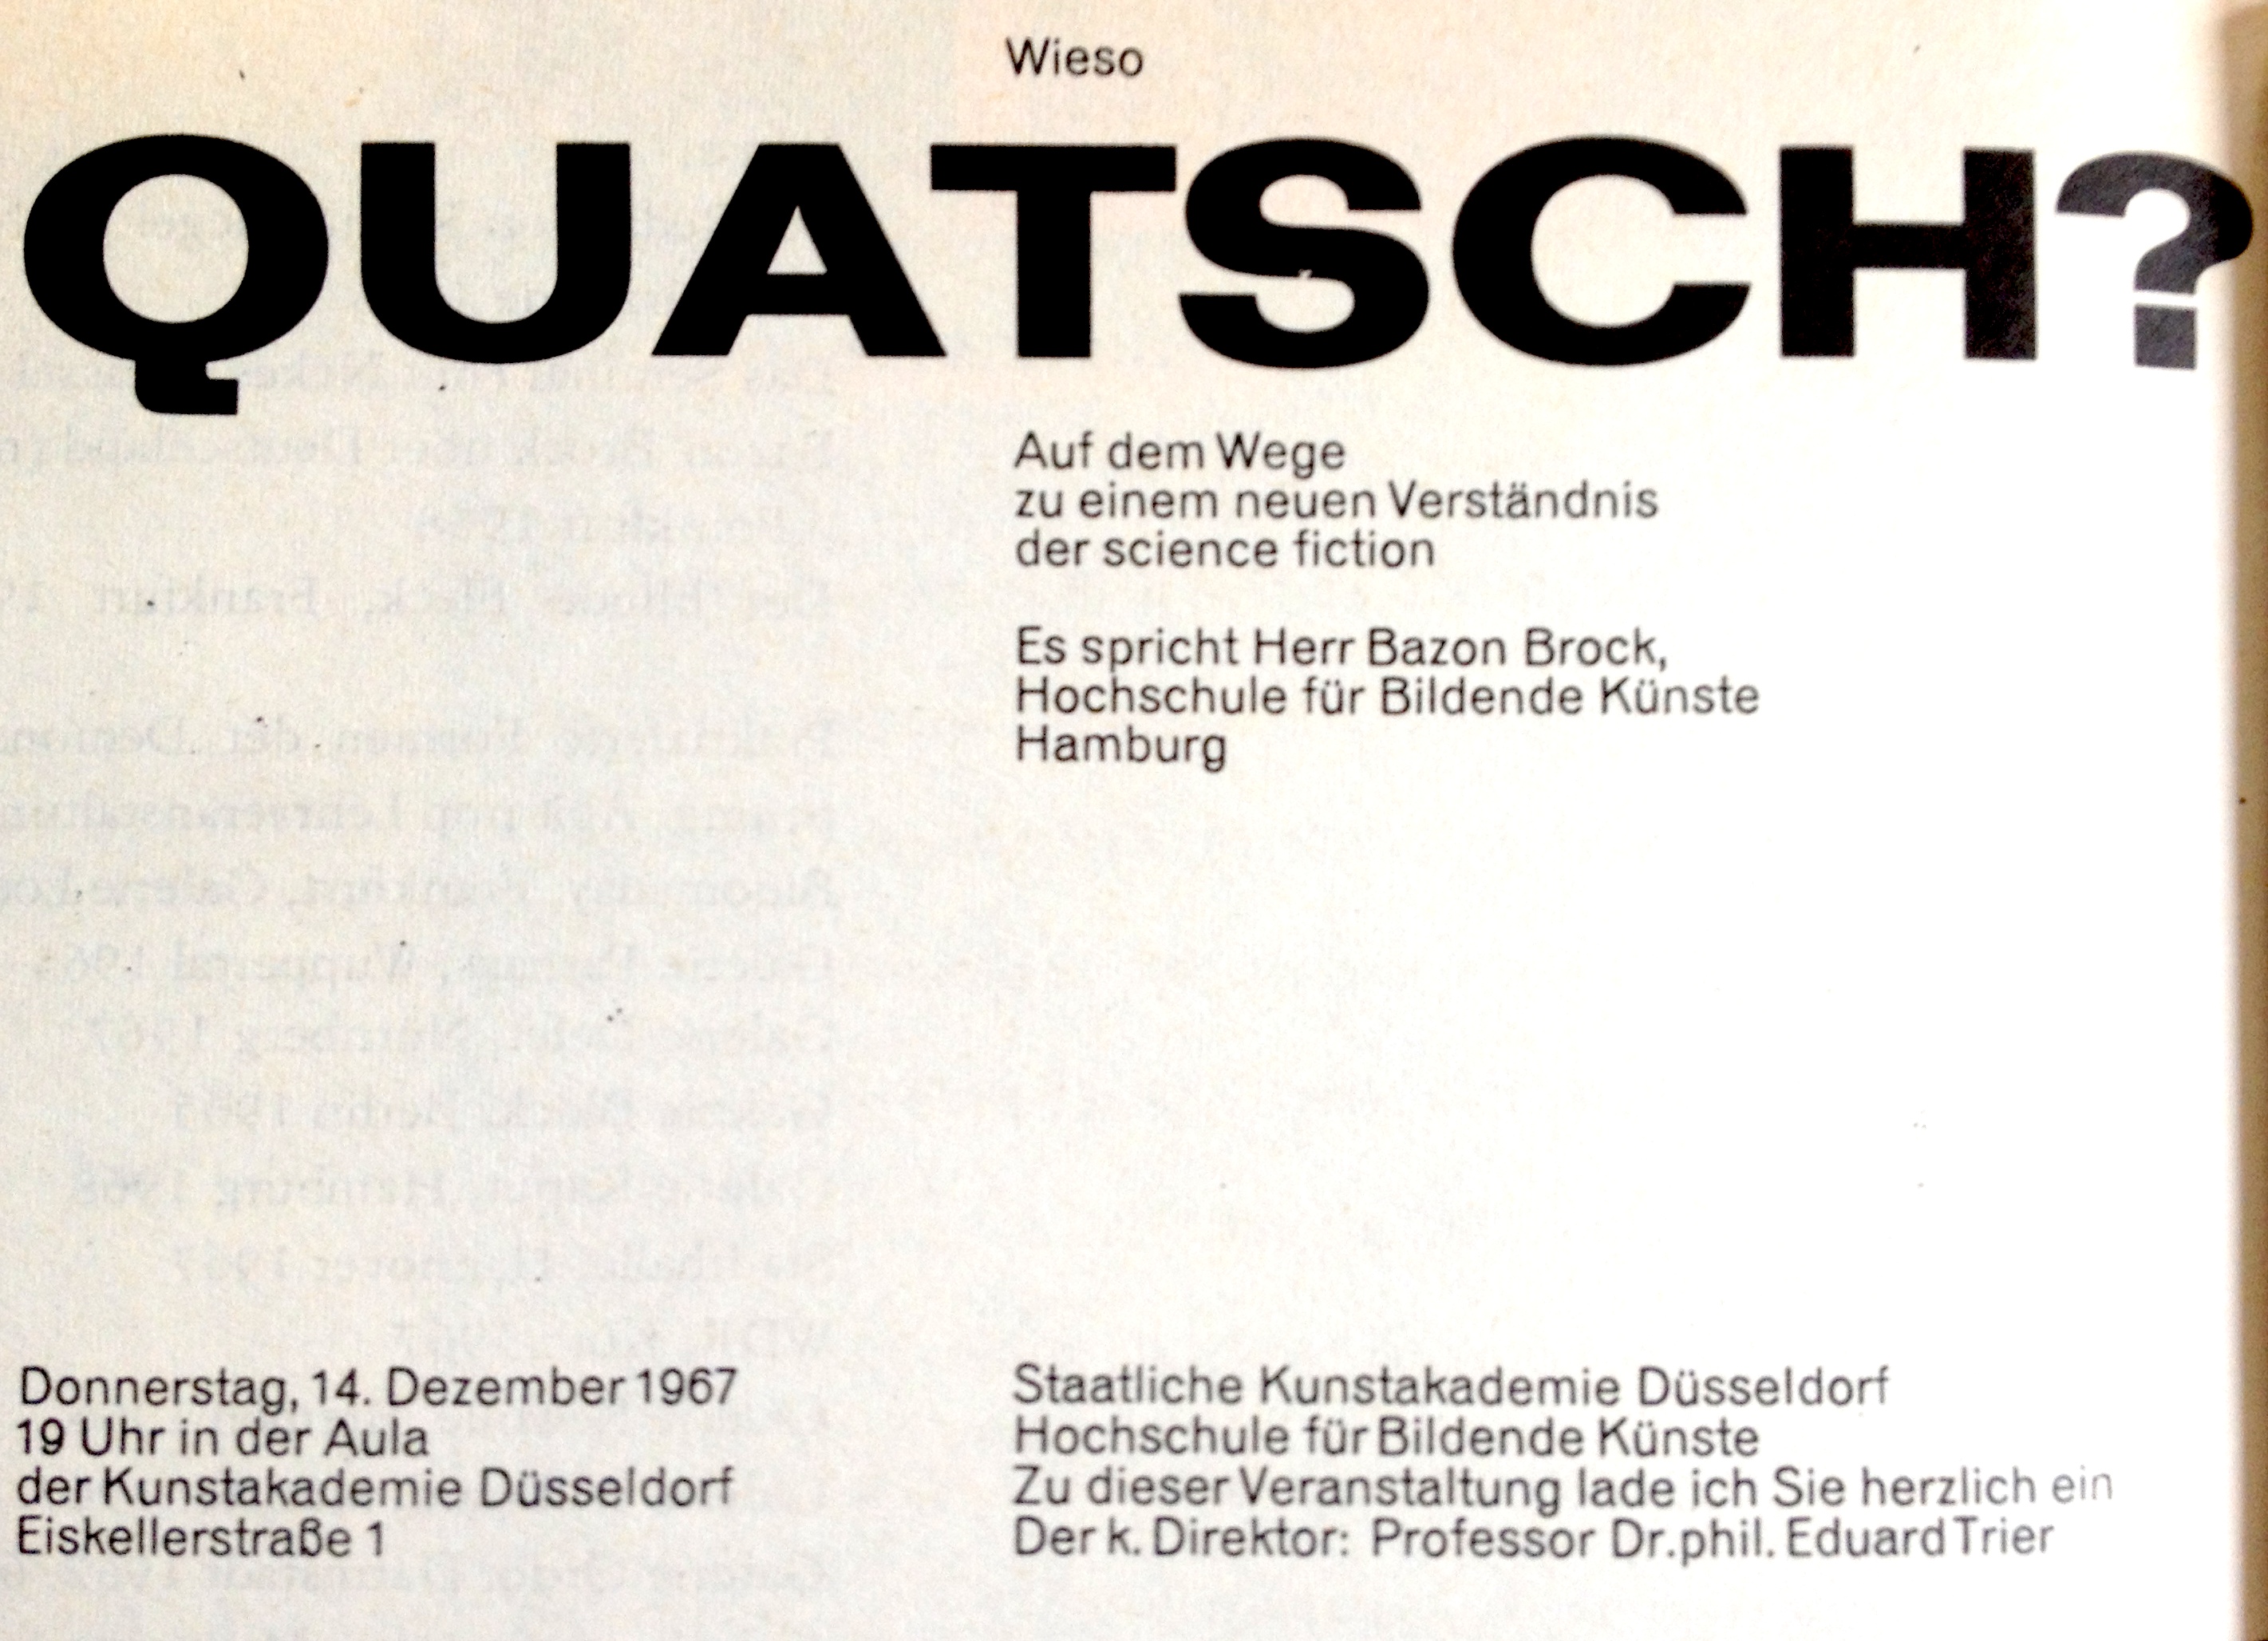 Wieso Quatsch?, Bild: Vortrag, Kunstakademie Düsseldorf, 14.12.1967.